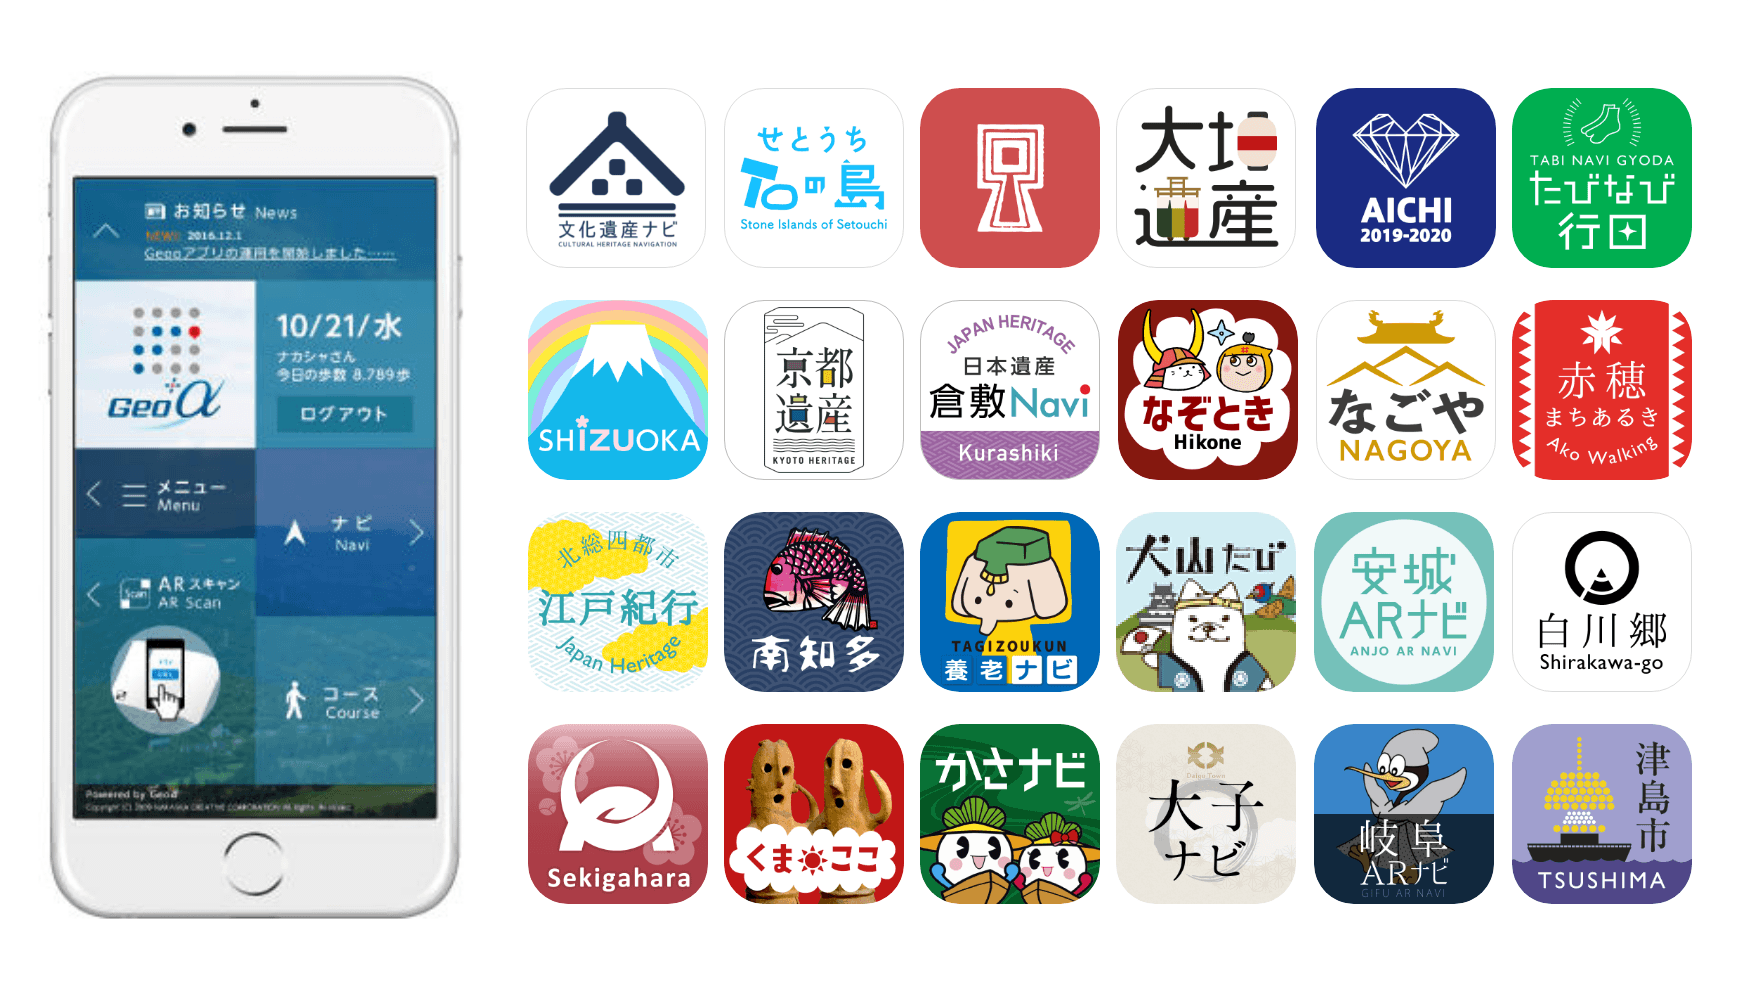 【Nakasha for the Future】現在リリースされている観光アプリの一覧